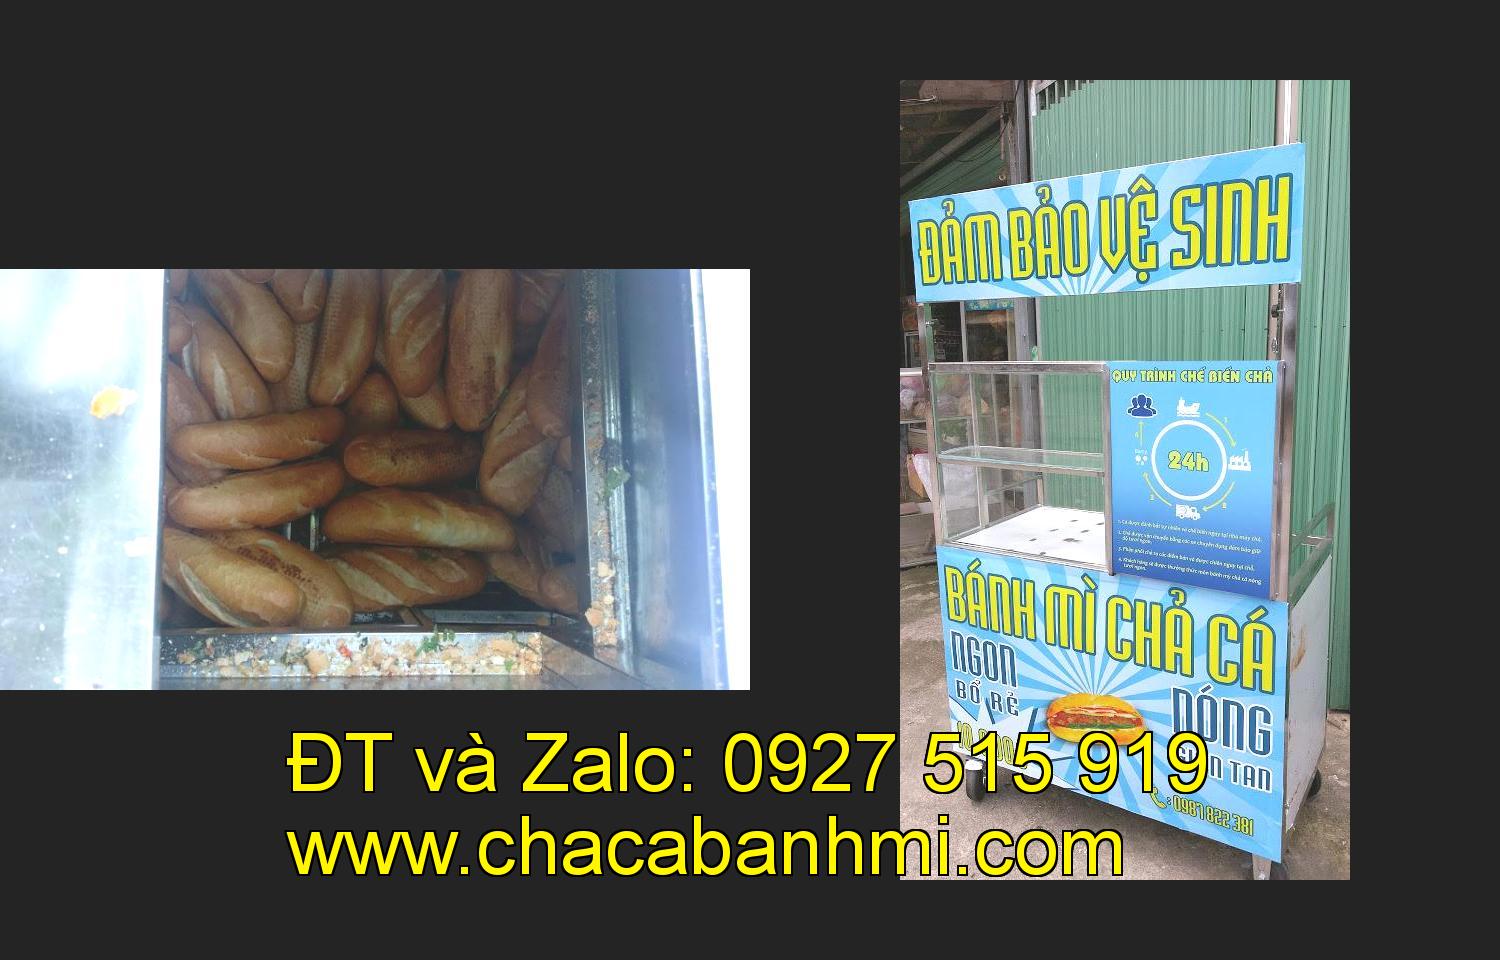 Bán xe bánh mì chả cá tại tỉnh Quảng Bình